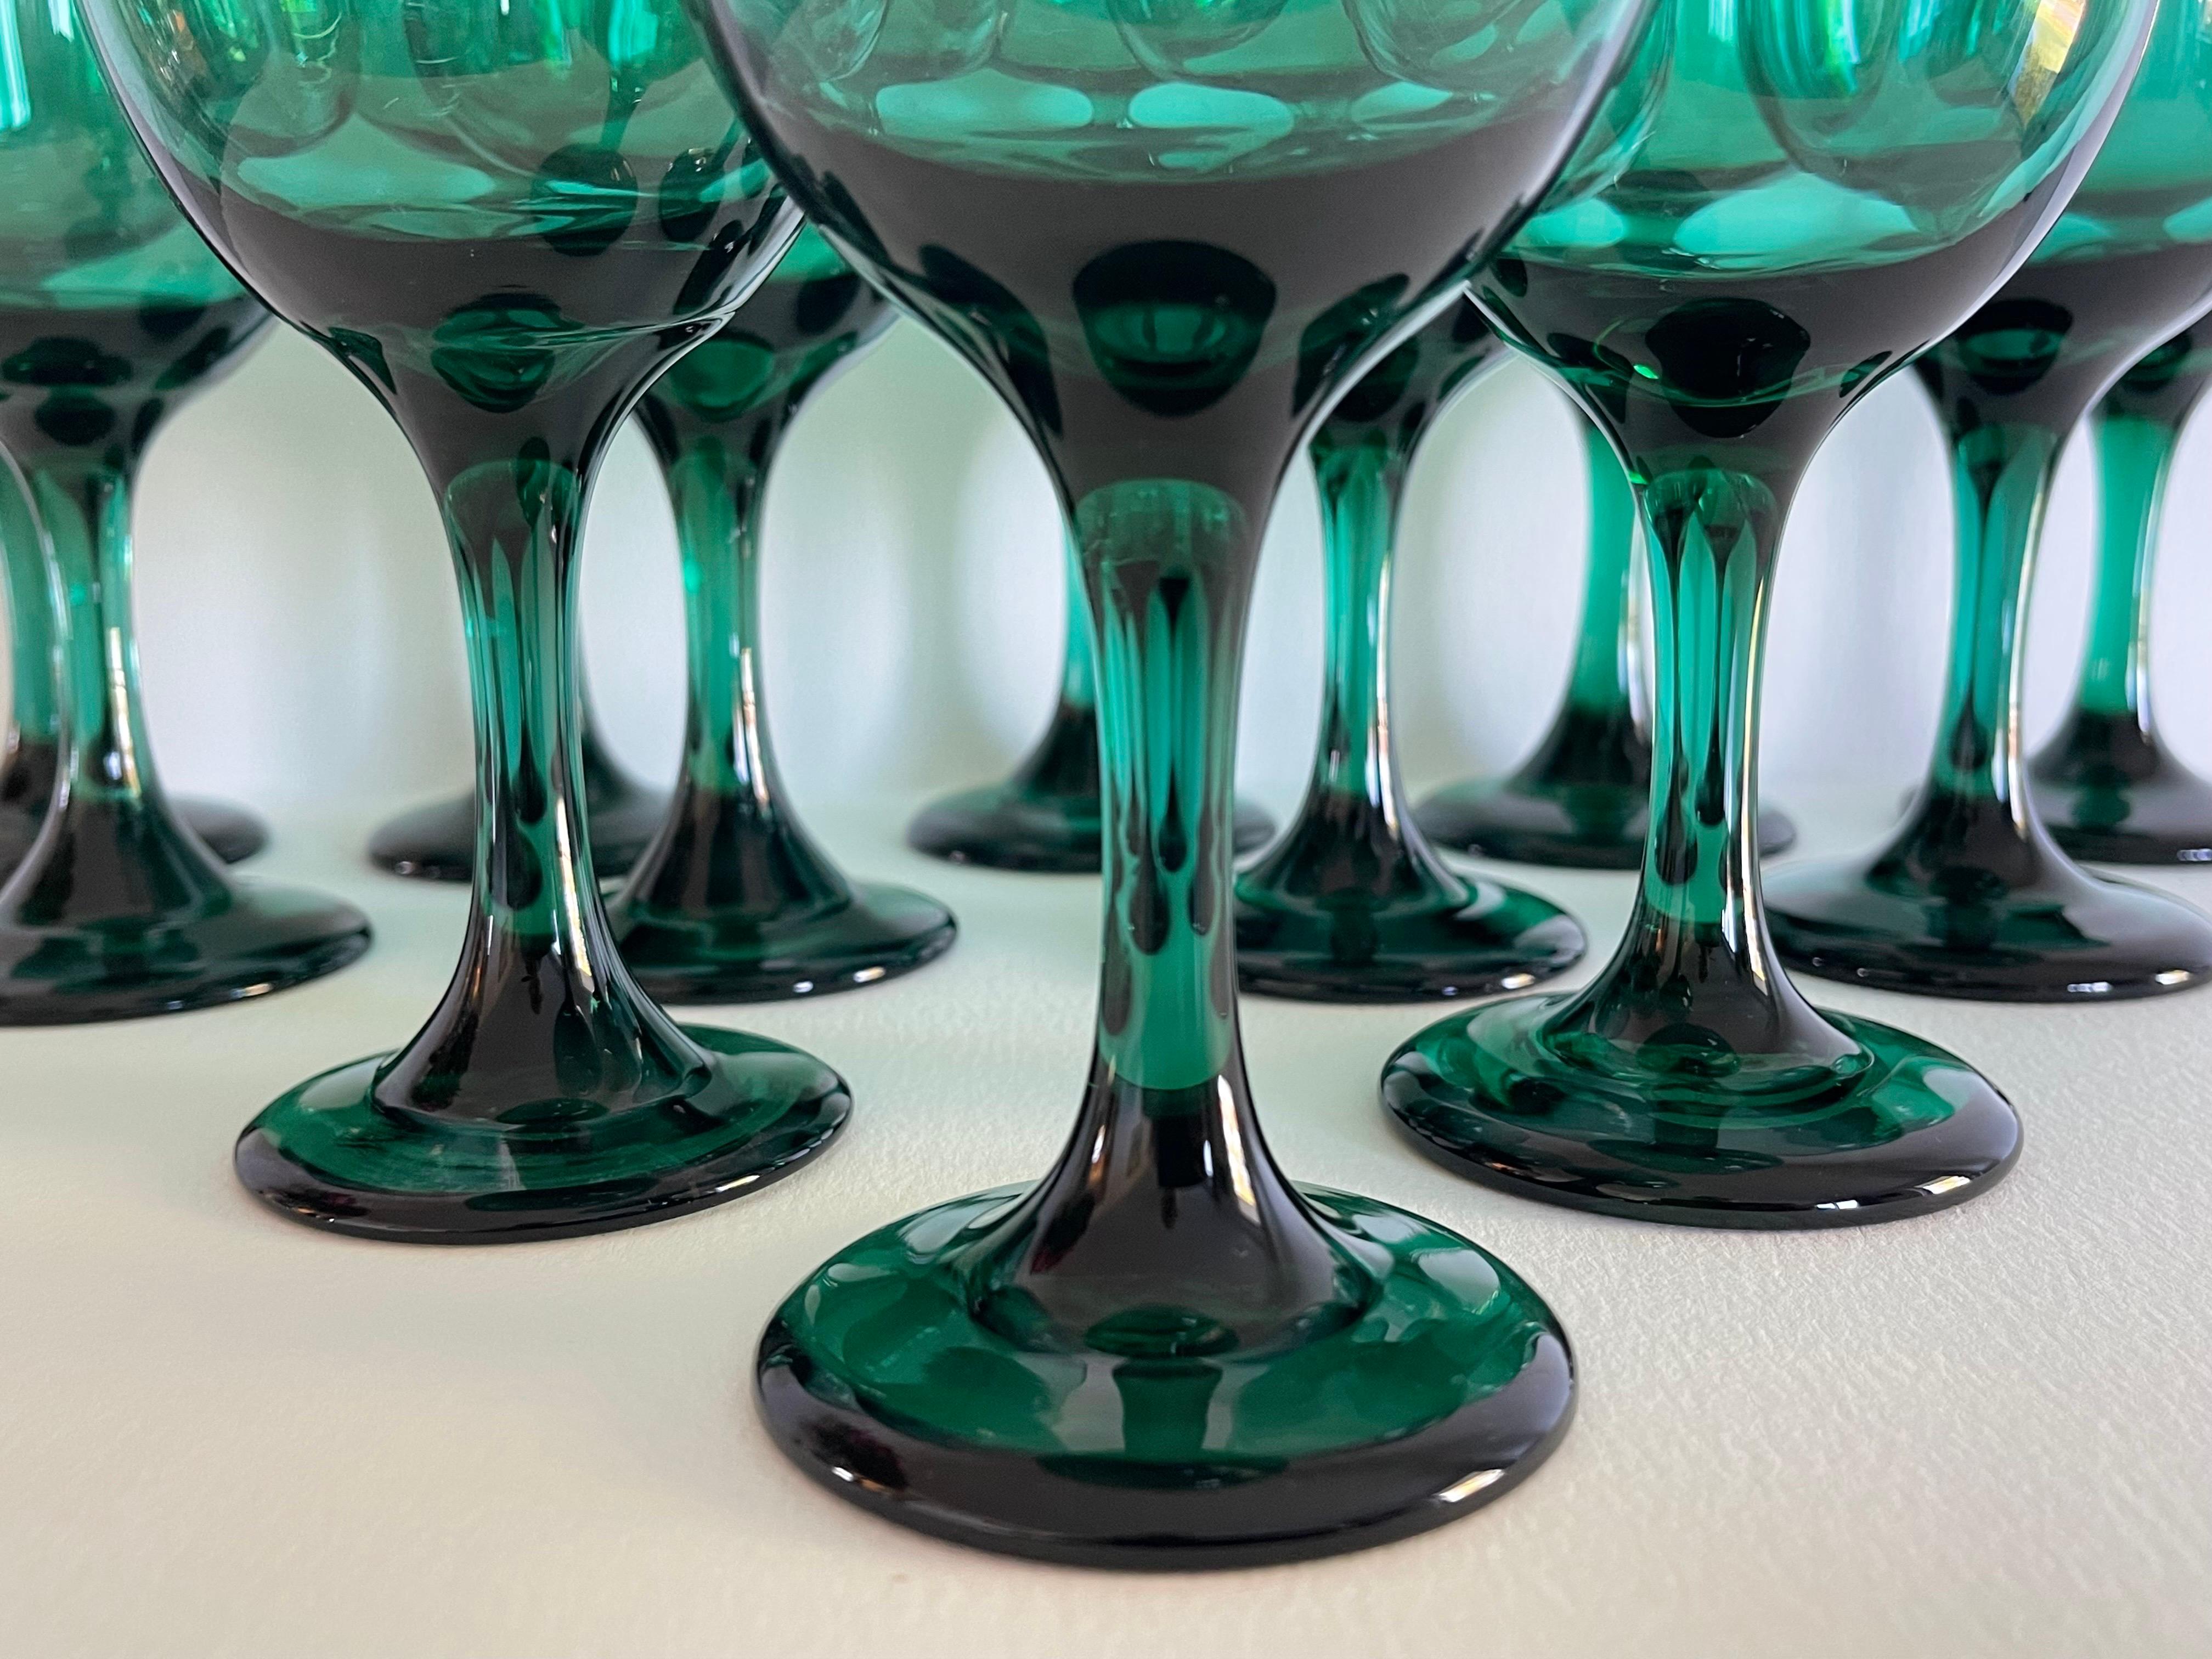 70's green glassware